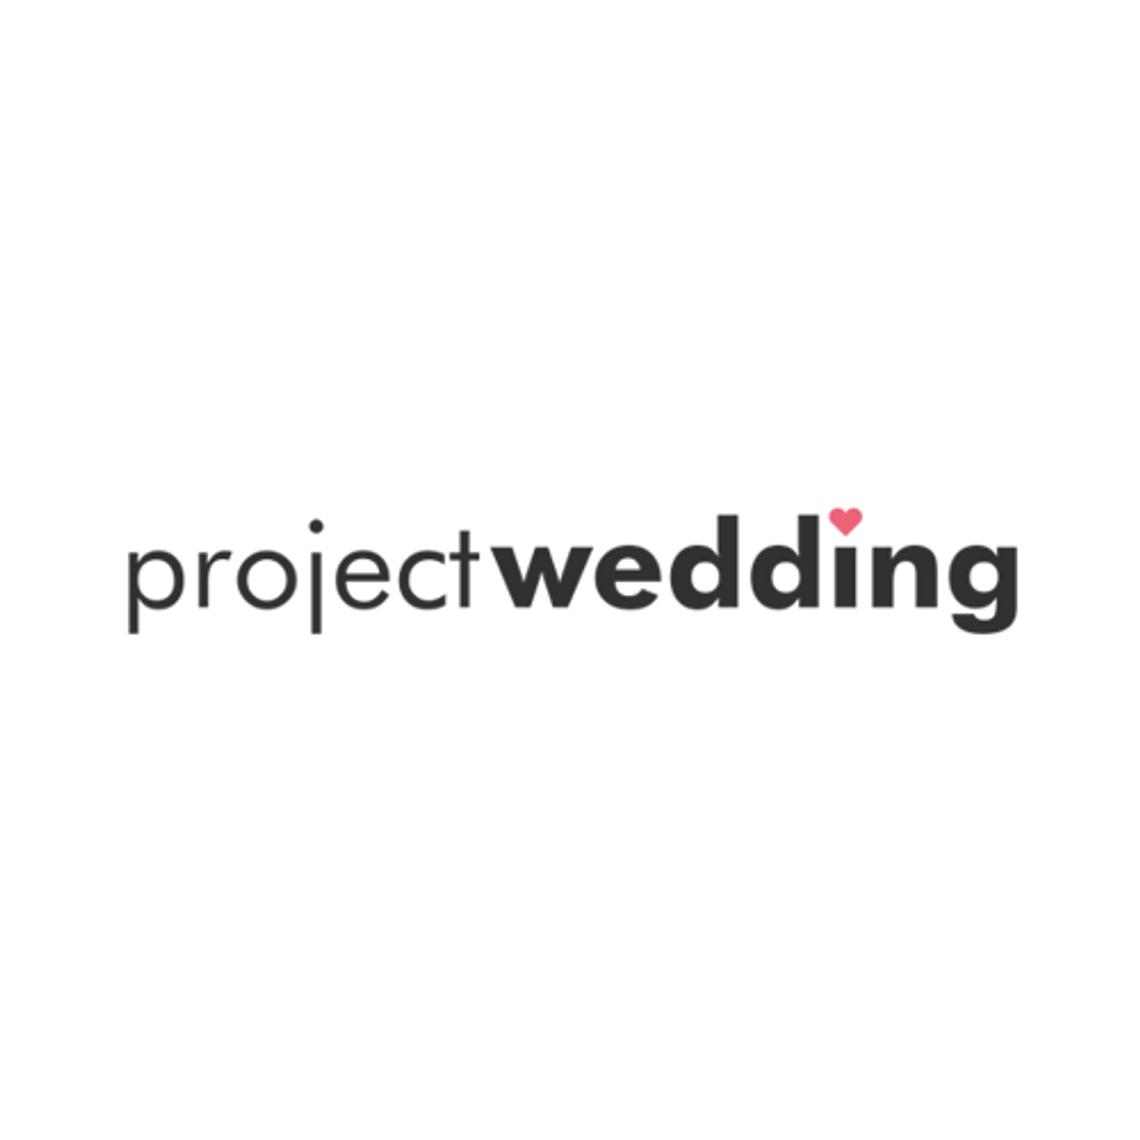 Project Wedding - organizacja ślubu i wesela